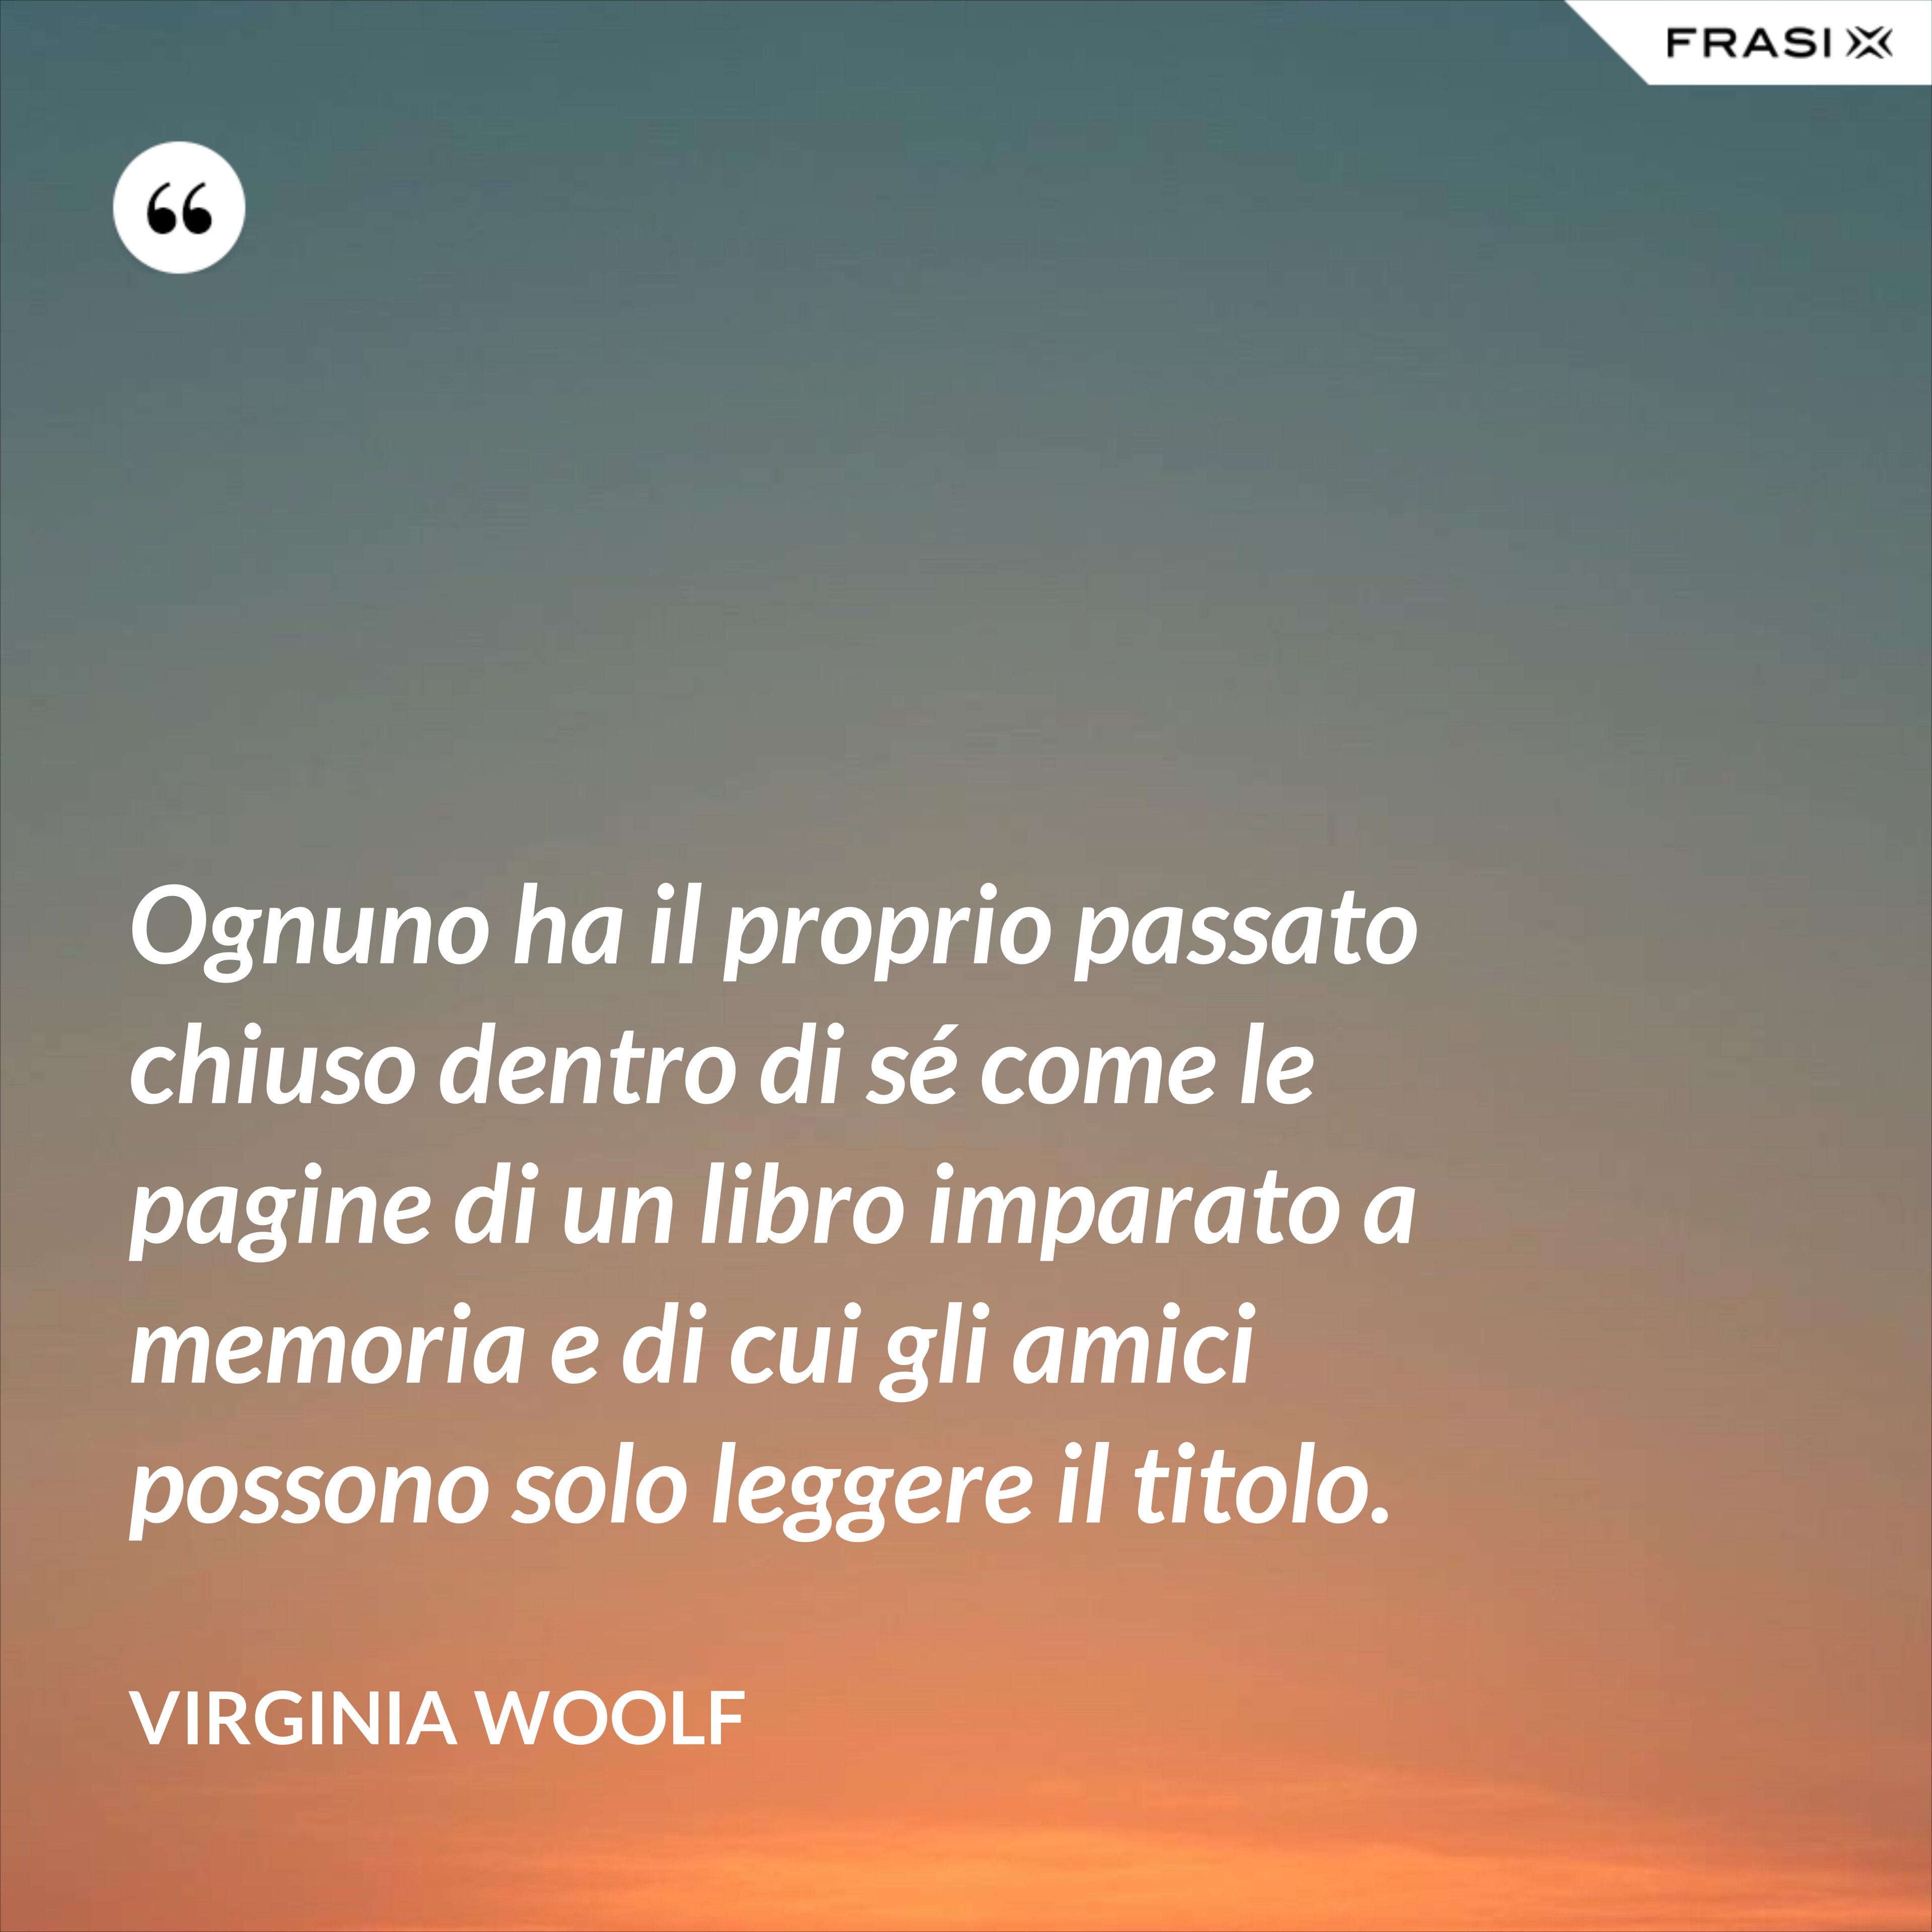 Ognuno ha il proprio passato chiuso dentro di sé come le pagine di un libro imparato a memoria e di cui gli amici possono solo leggere il titolo. - Virginia Woolf